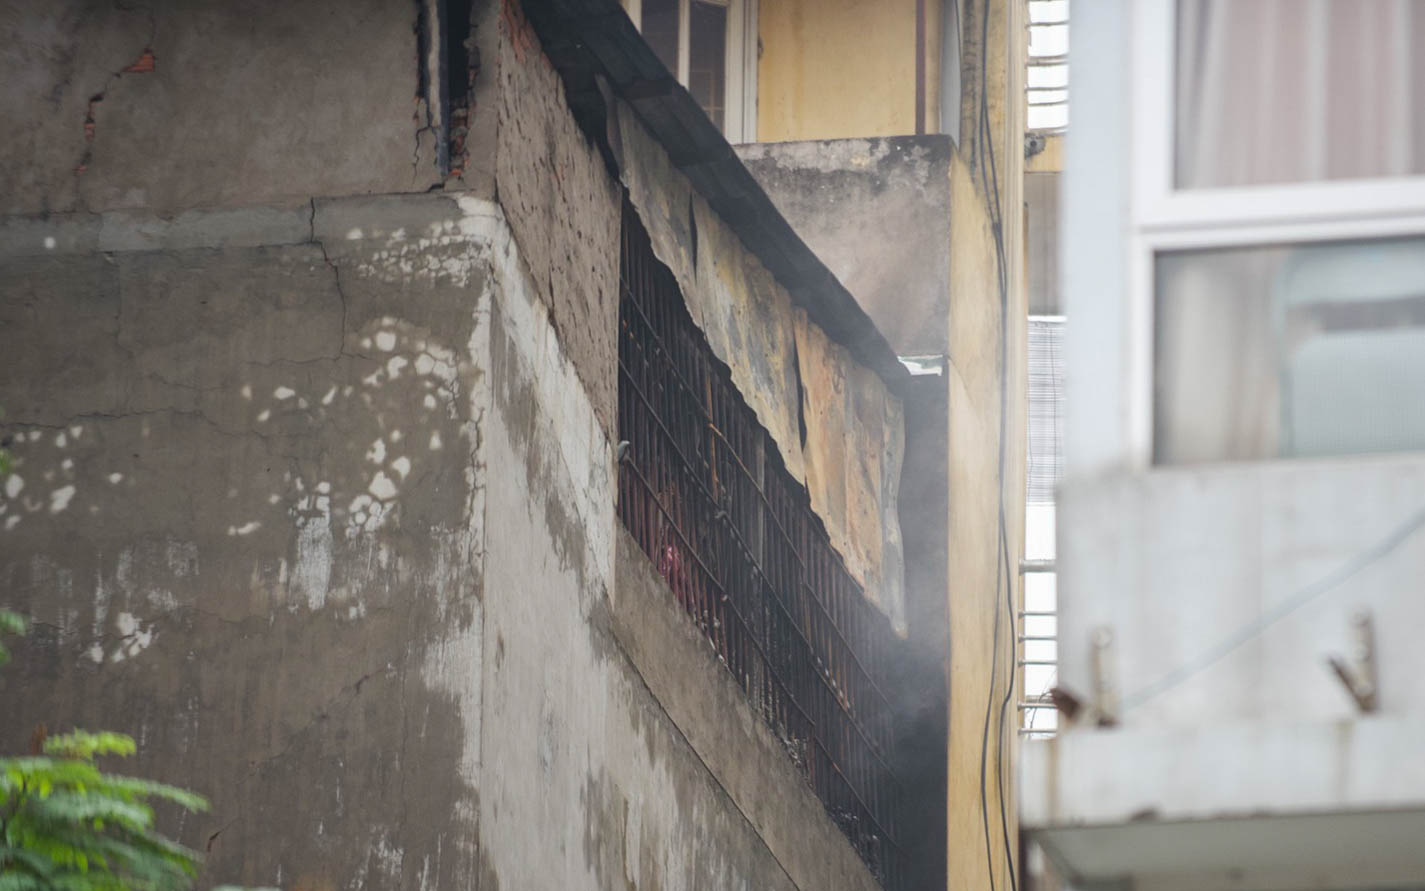 Từ vụ cháy nhà khiến 4 người trong gia đình tử vong ở Hà Nội: Lối thoát hiểm an toàn vẫn bị xem nhẹ, chạy lên tum giống như đi vào đường cùng